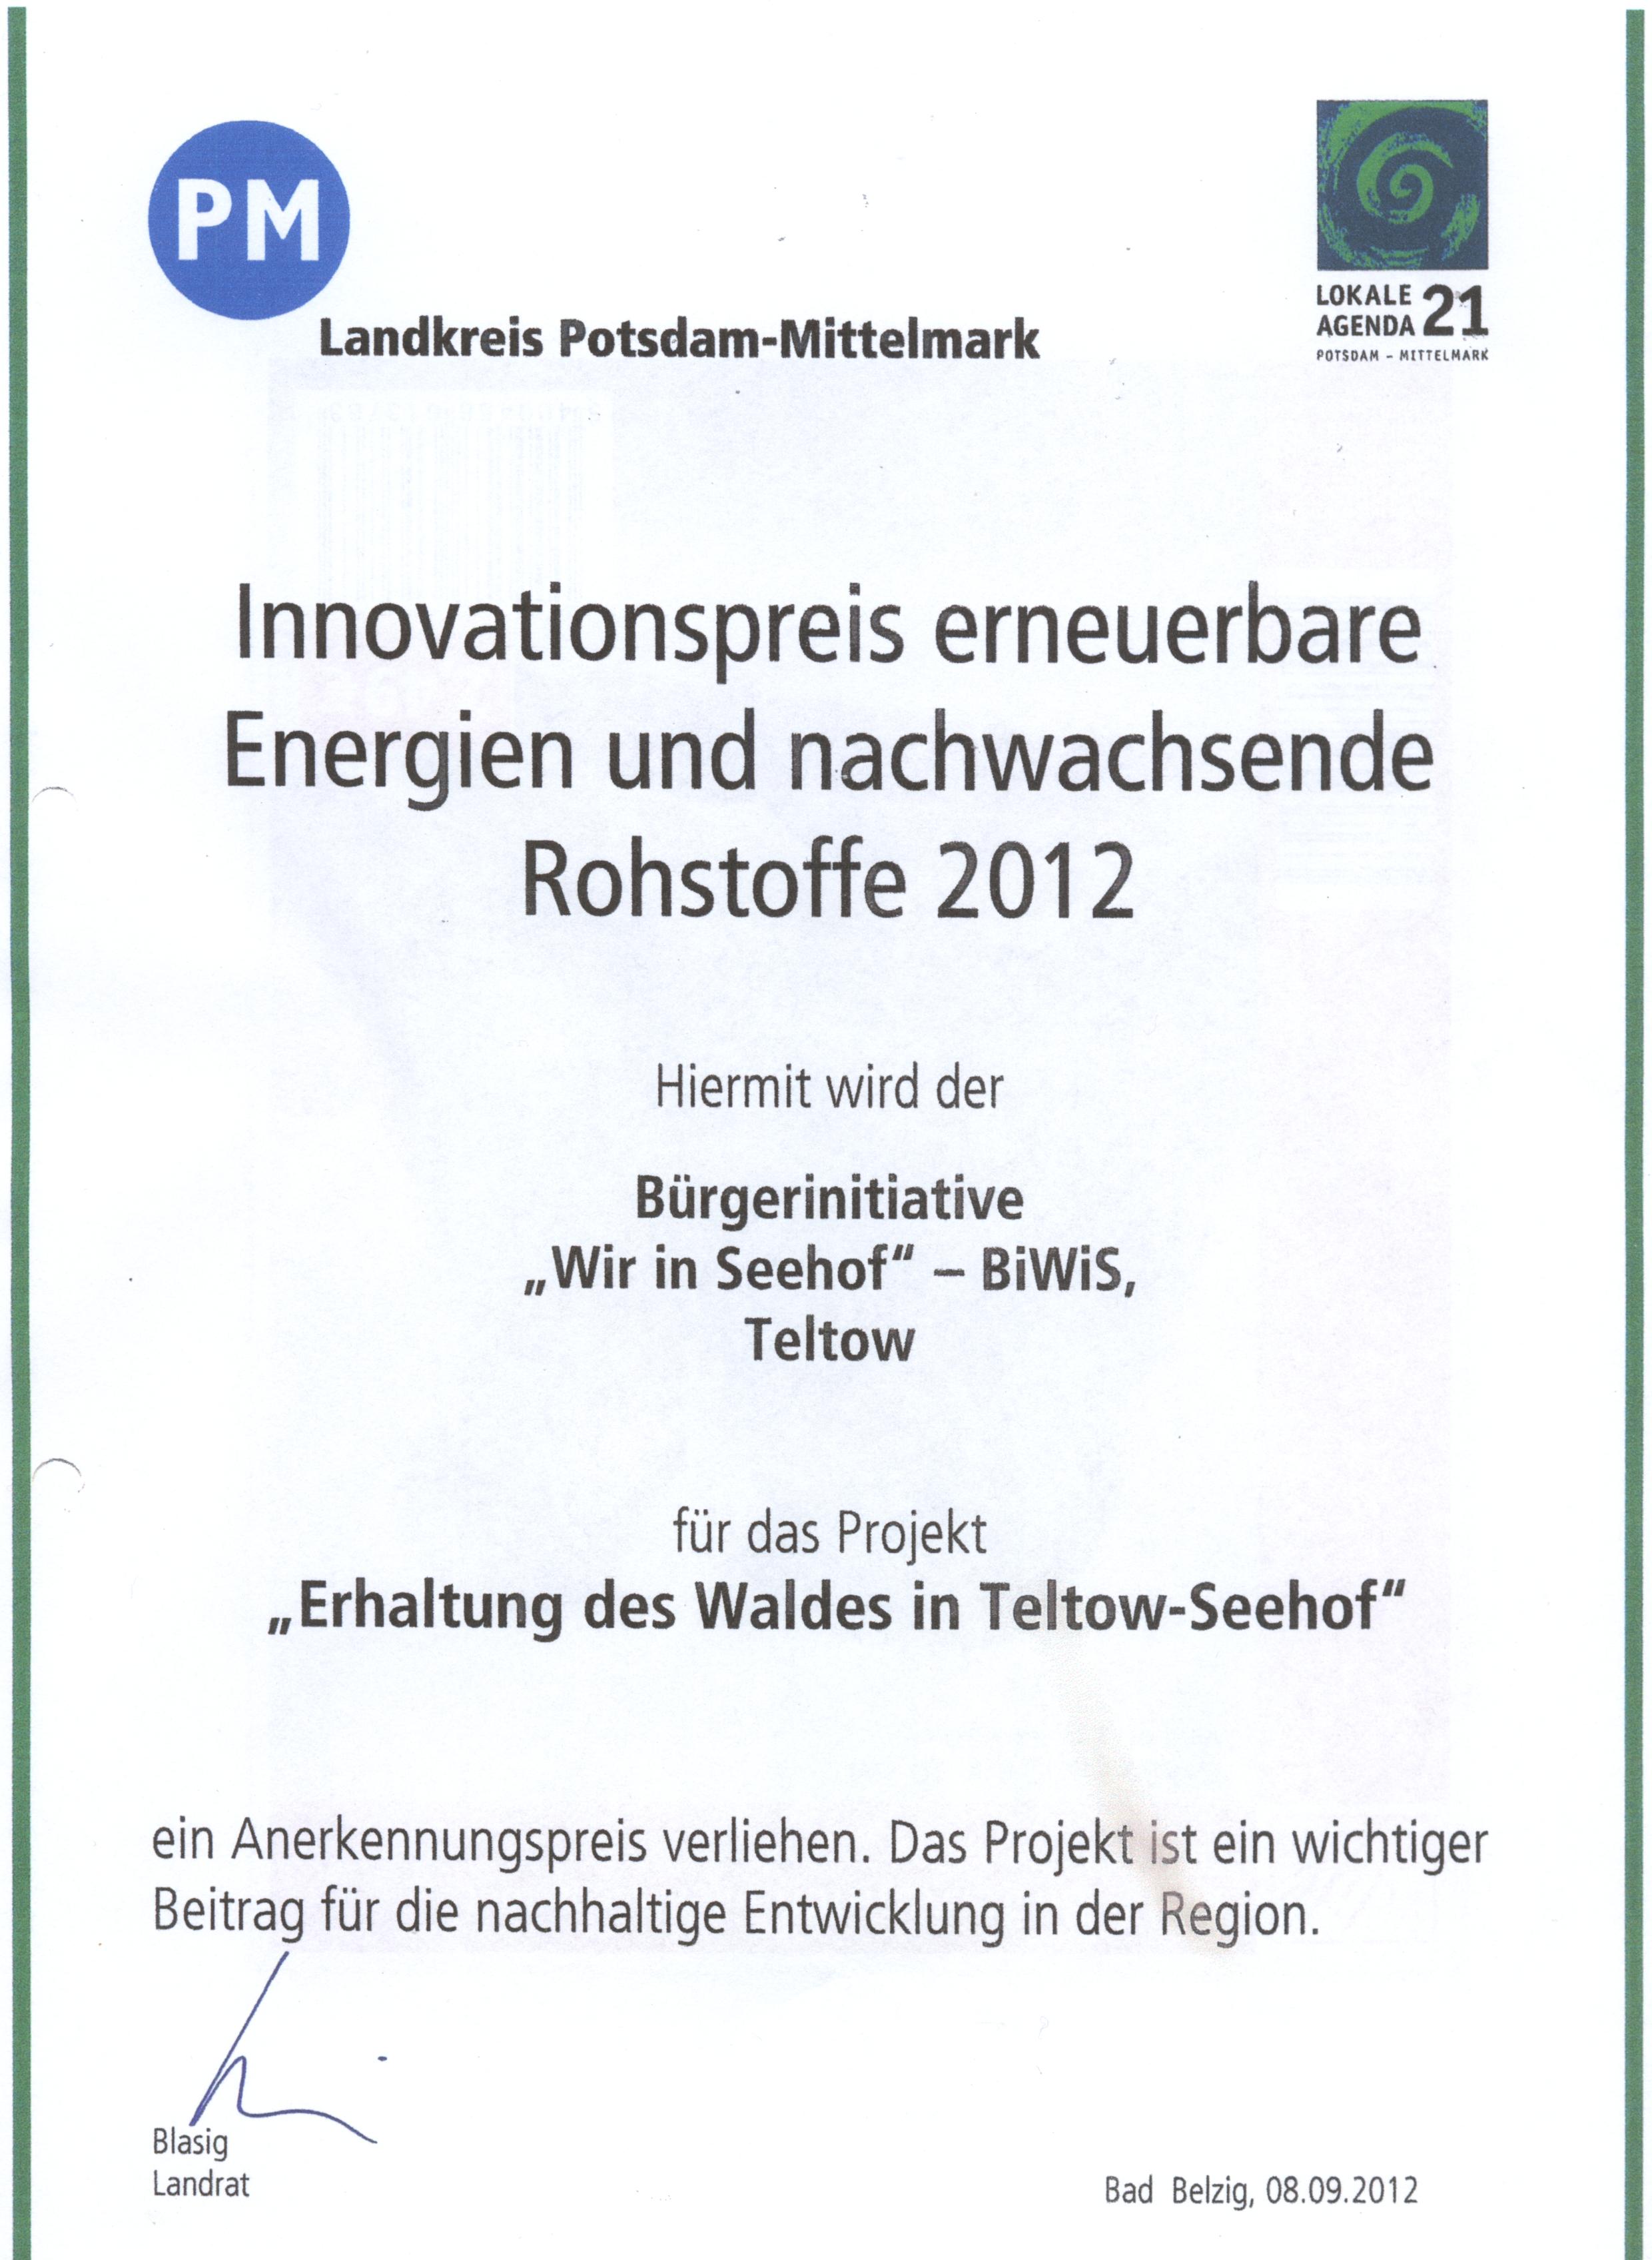 Innovationspreis des Landkreises Potsdam-Mittelmark an die Biwis für den Kampf um den Erhalt des Waldes in Teltow-Seehof, unterzeichnet vom Landrat Herr Blasig (SPD) Danke. 